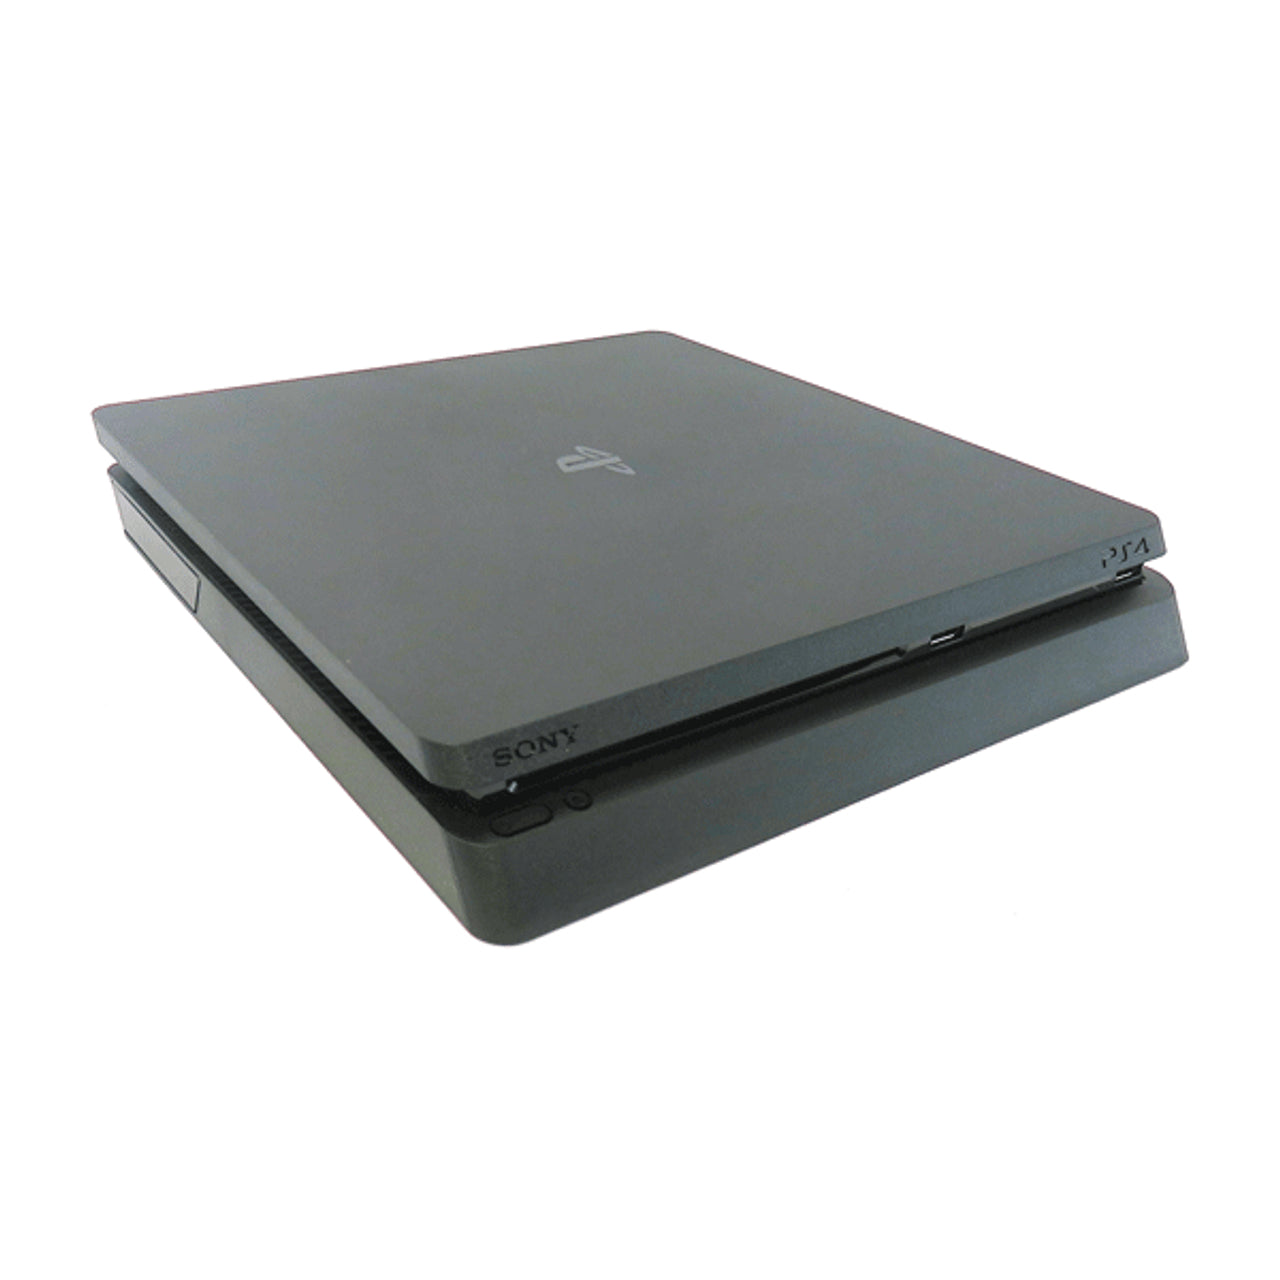 Playstation 4 Slim 1TB Console - Black